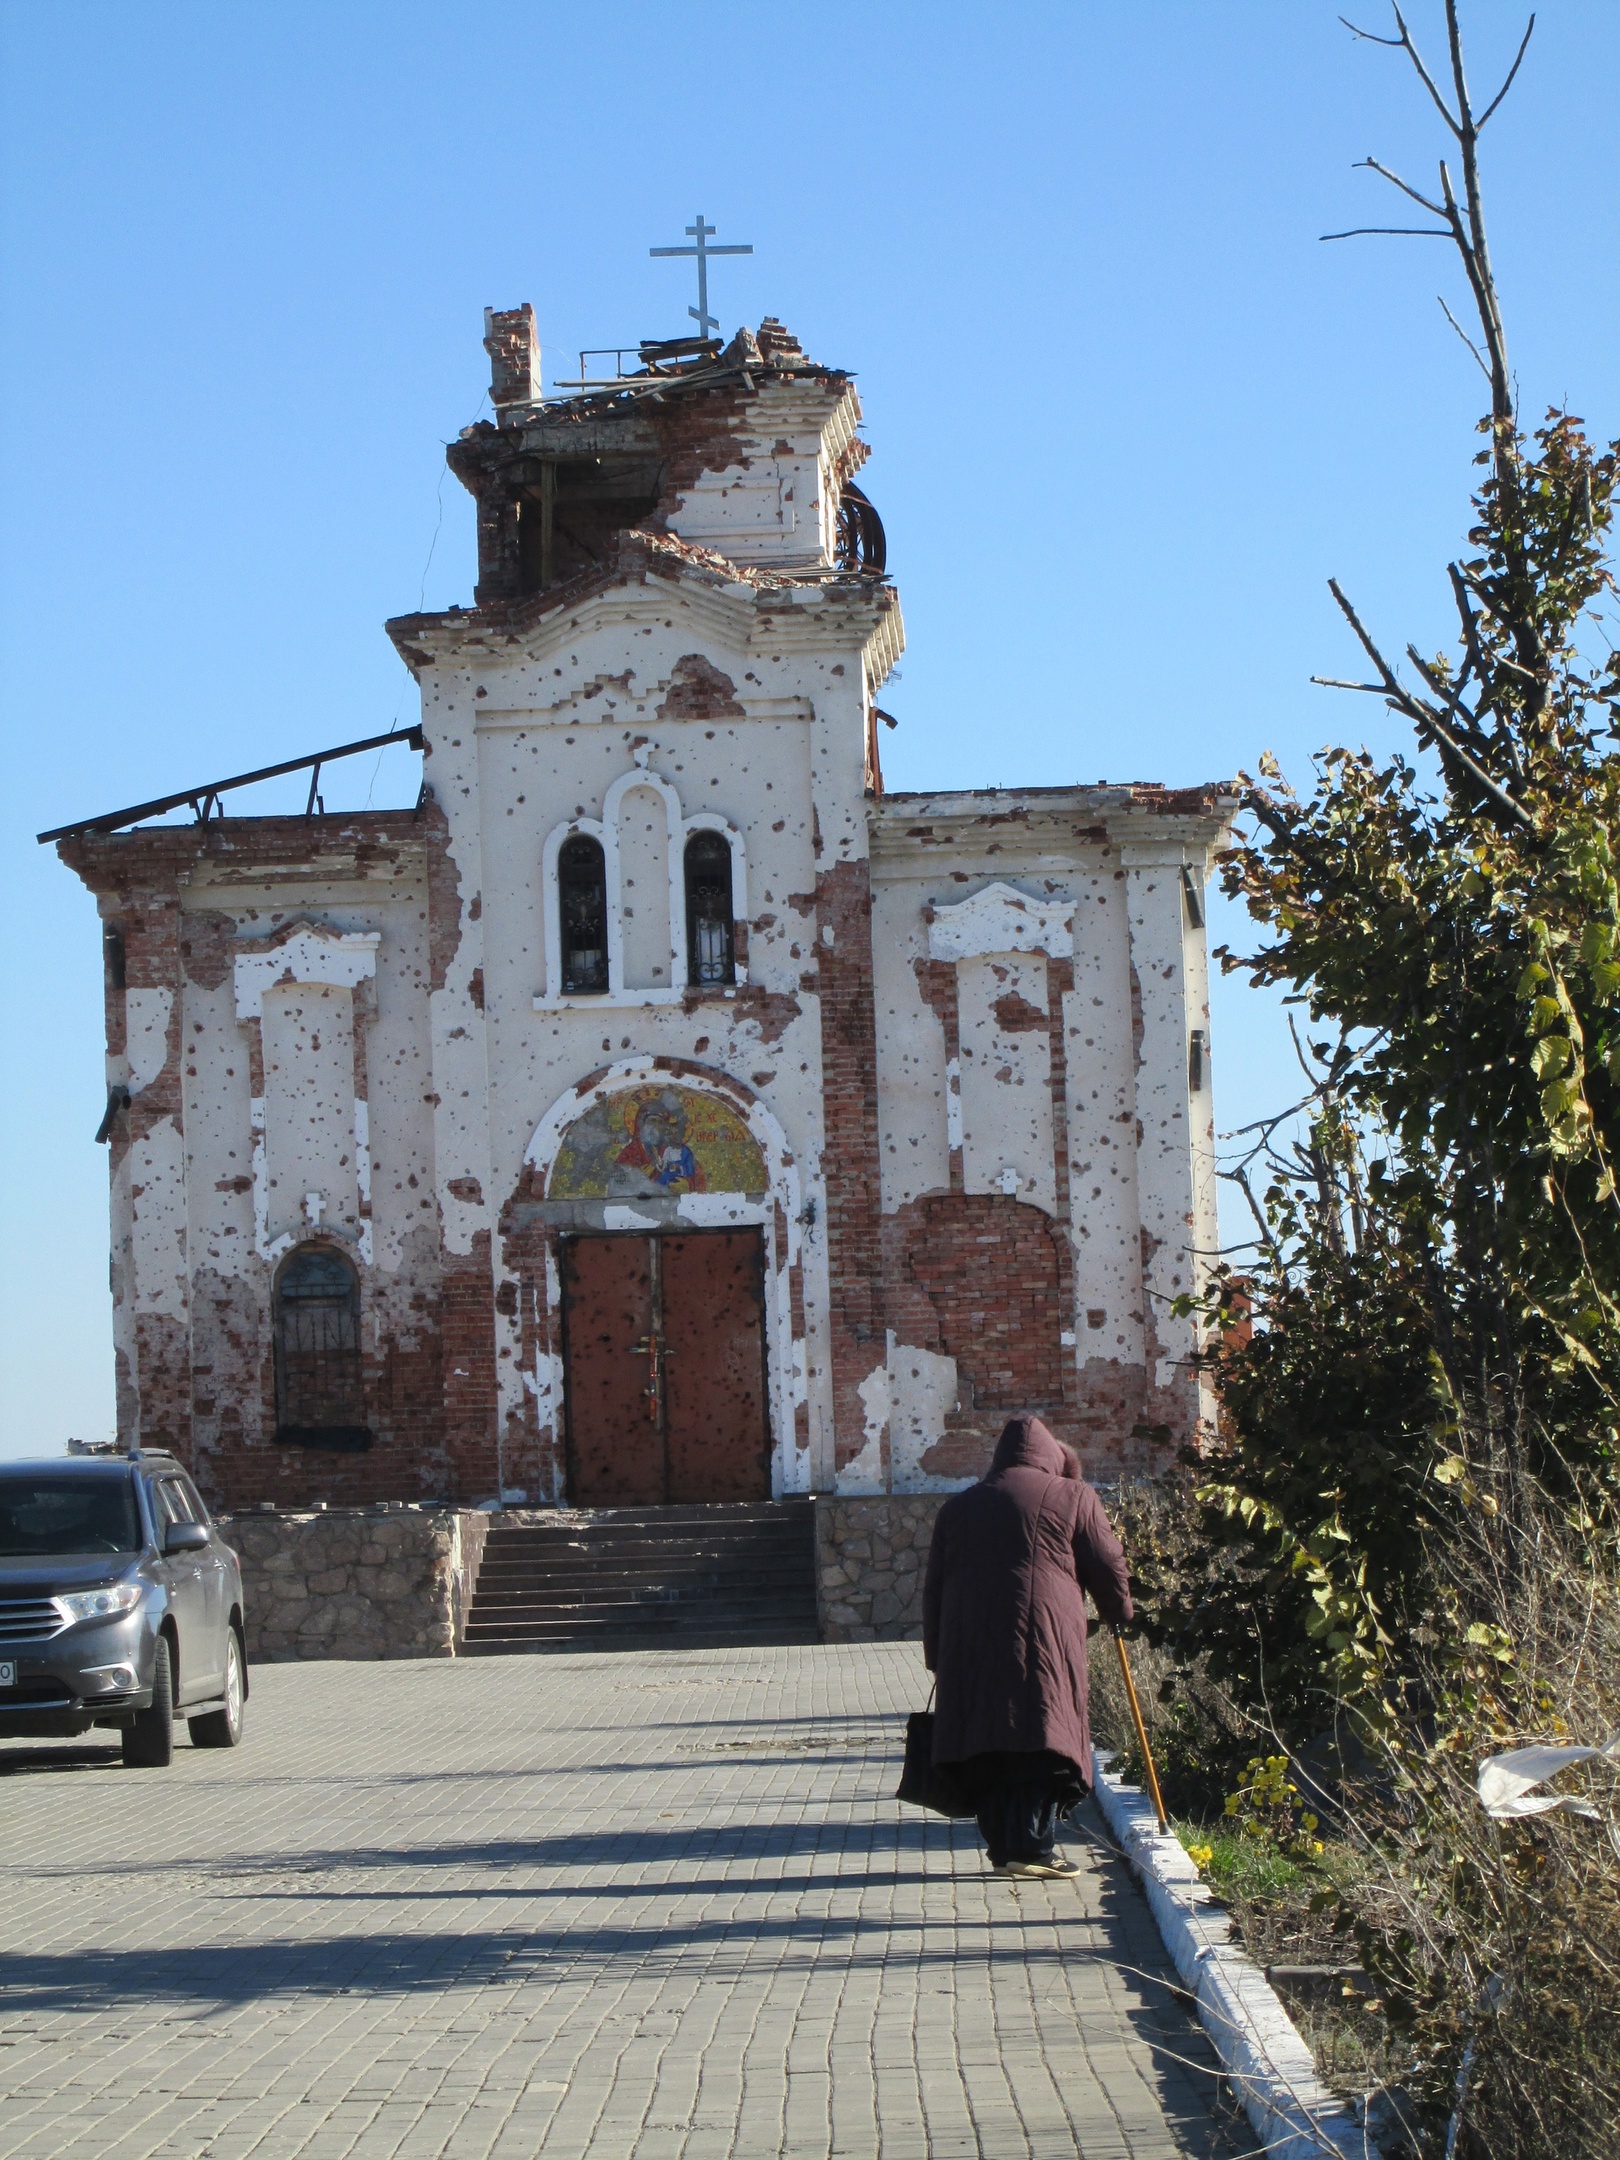 Иверский храм, что у Донецкого и аэропорта, это фото назвала Дорога к храму